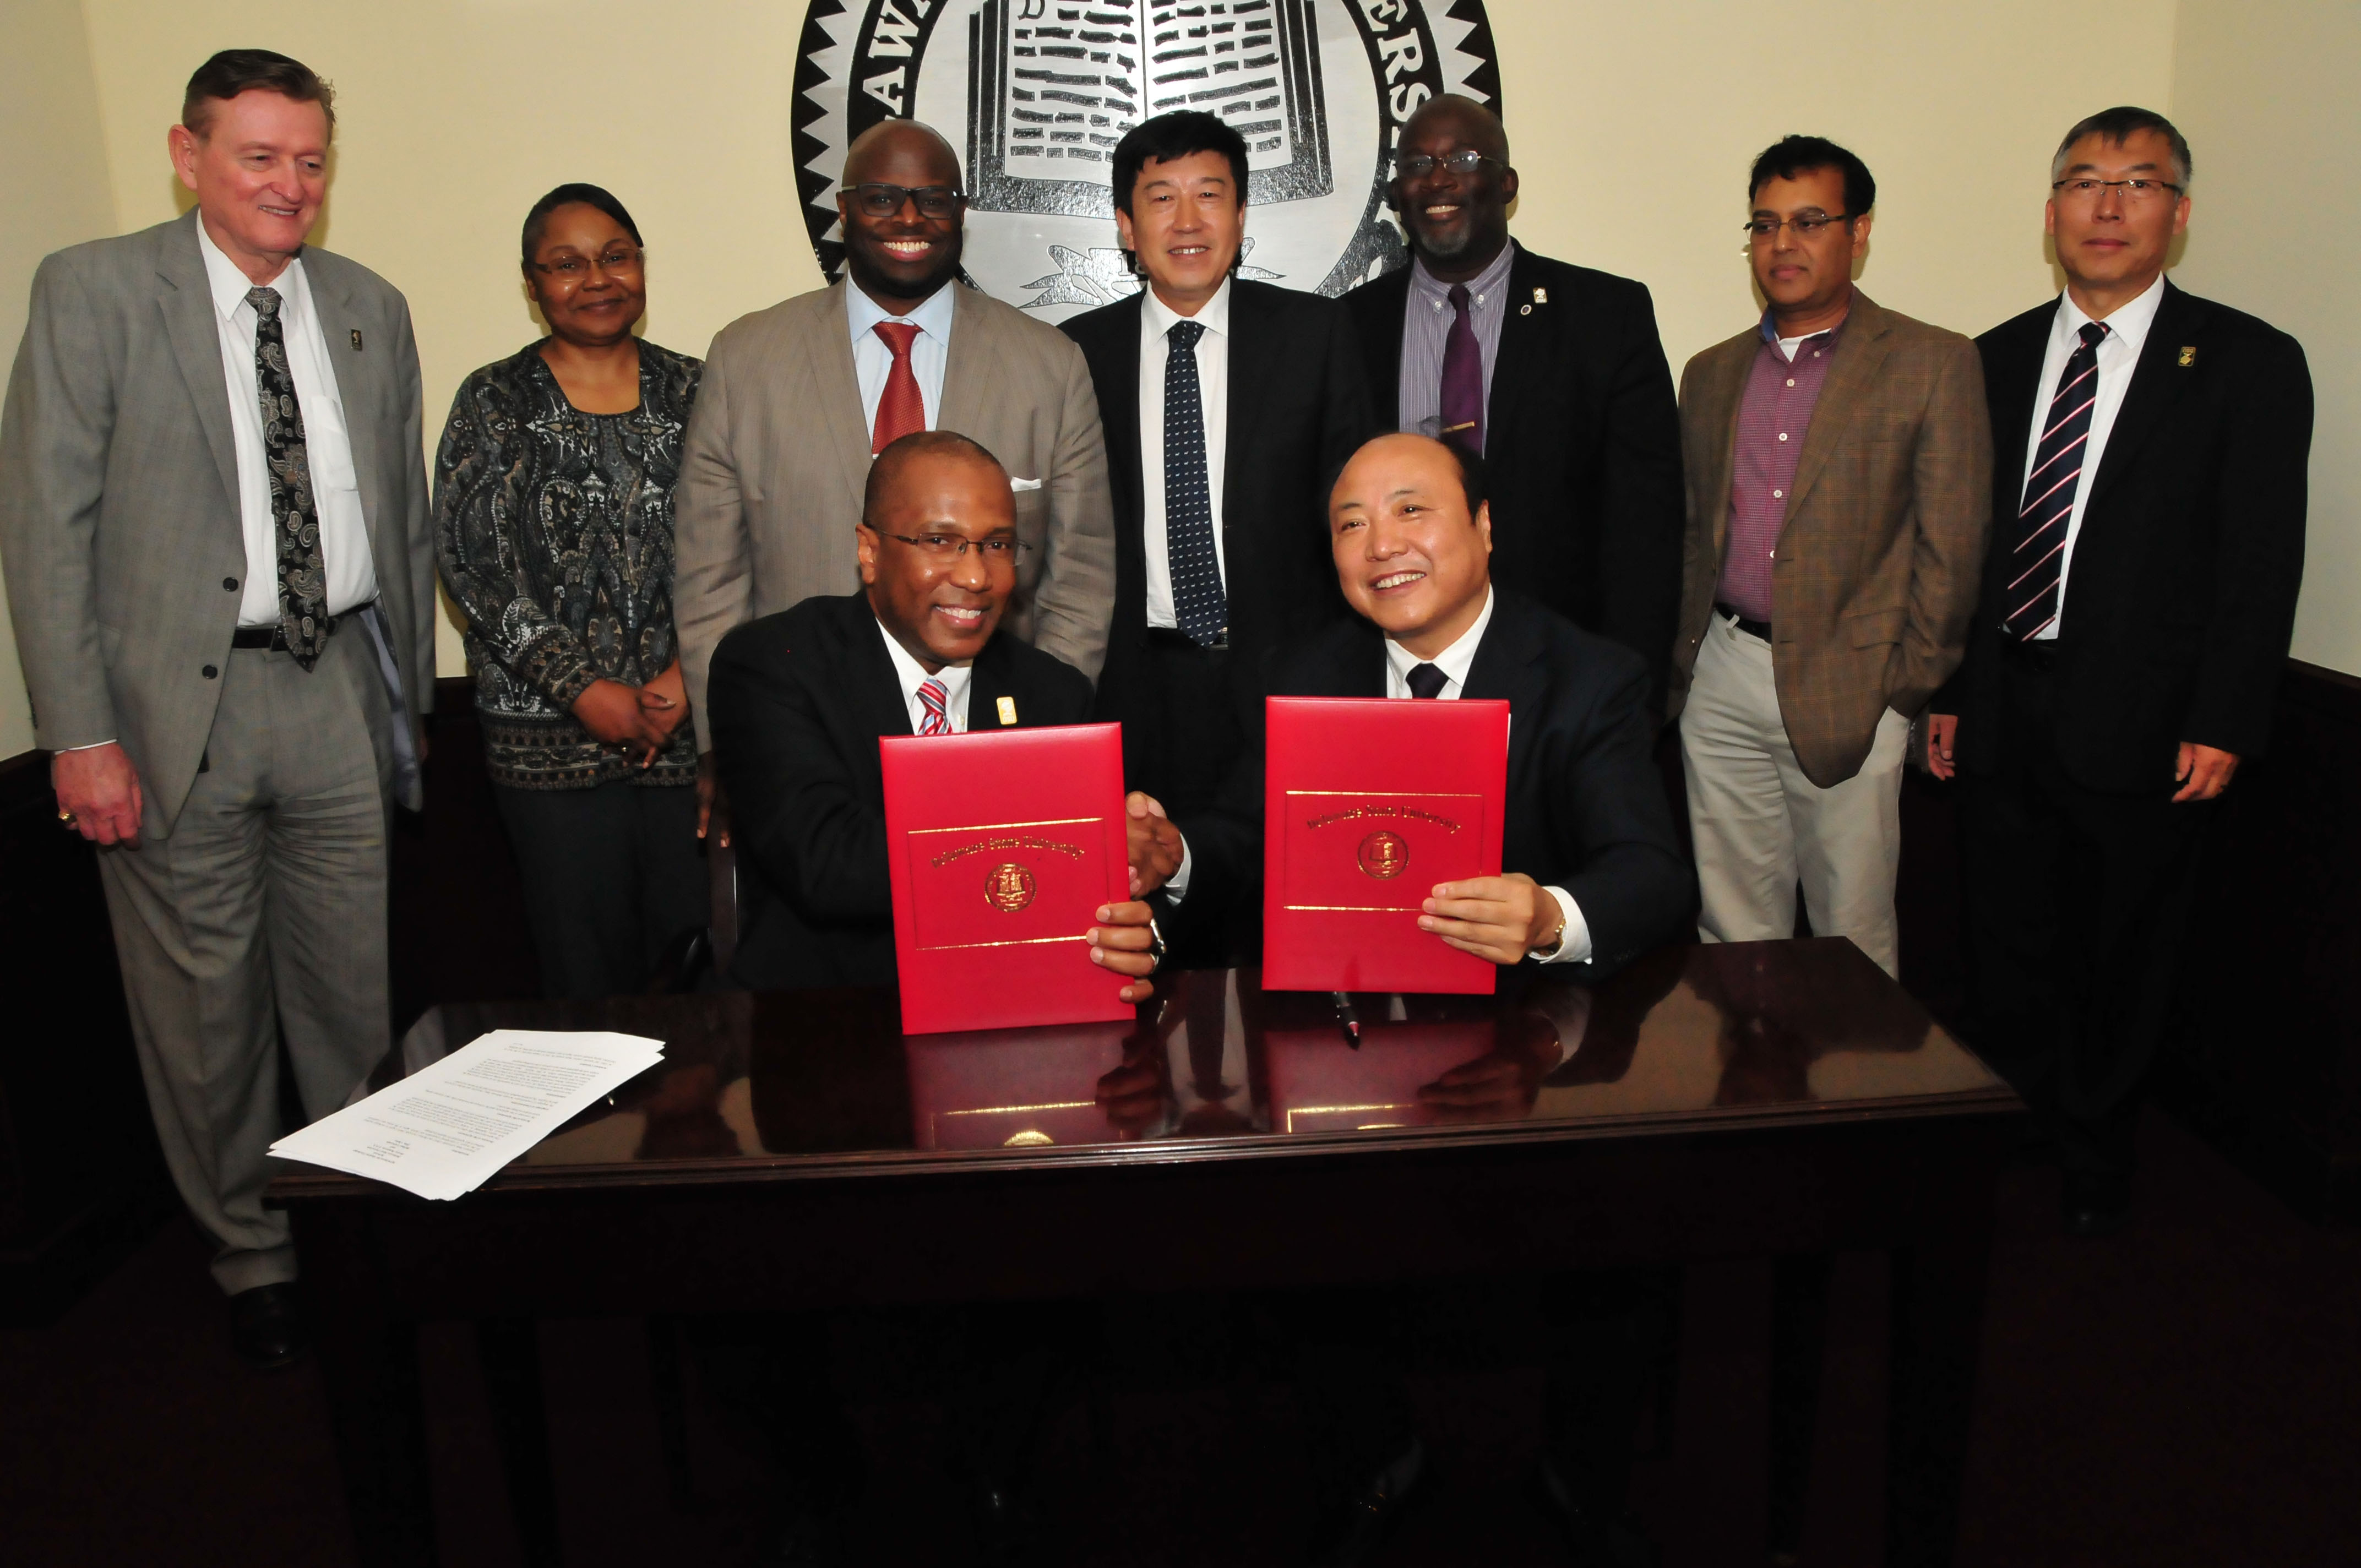 DSU, Beihua University finalize joint agreement